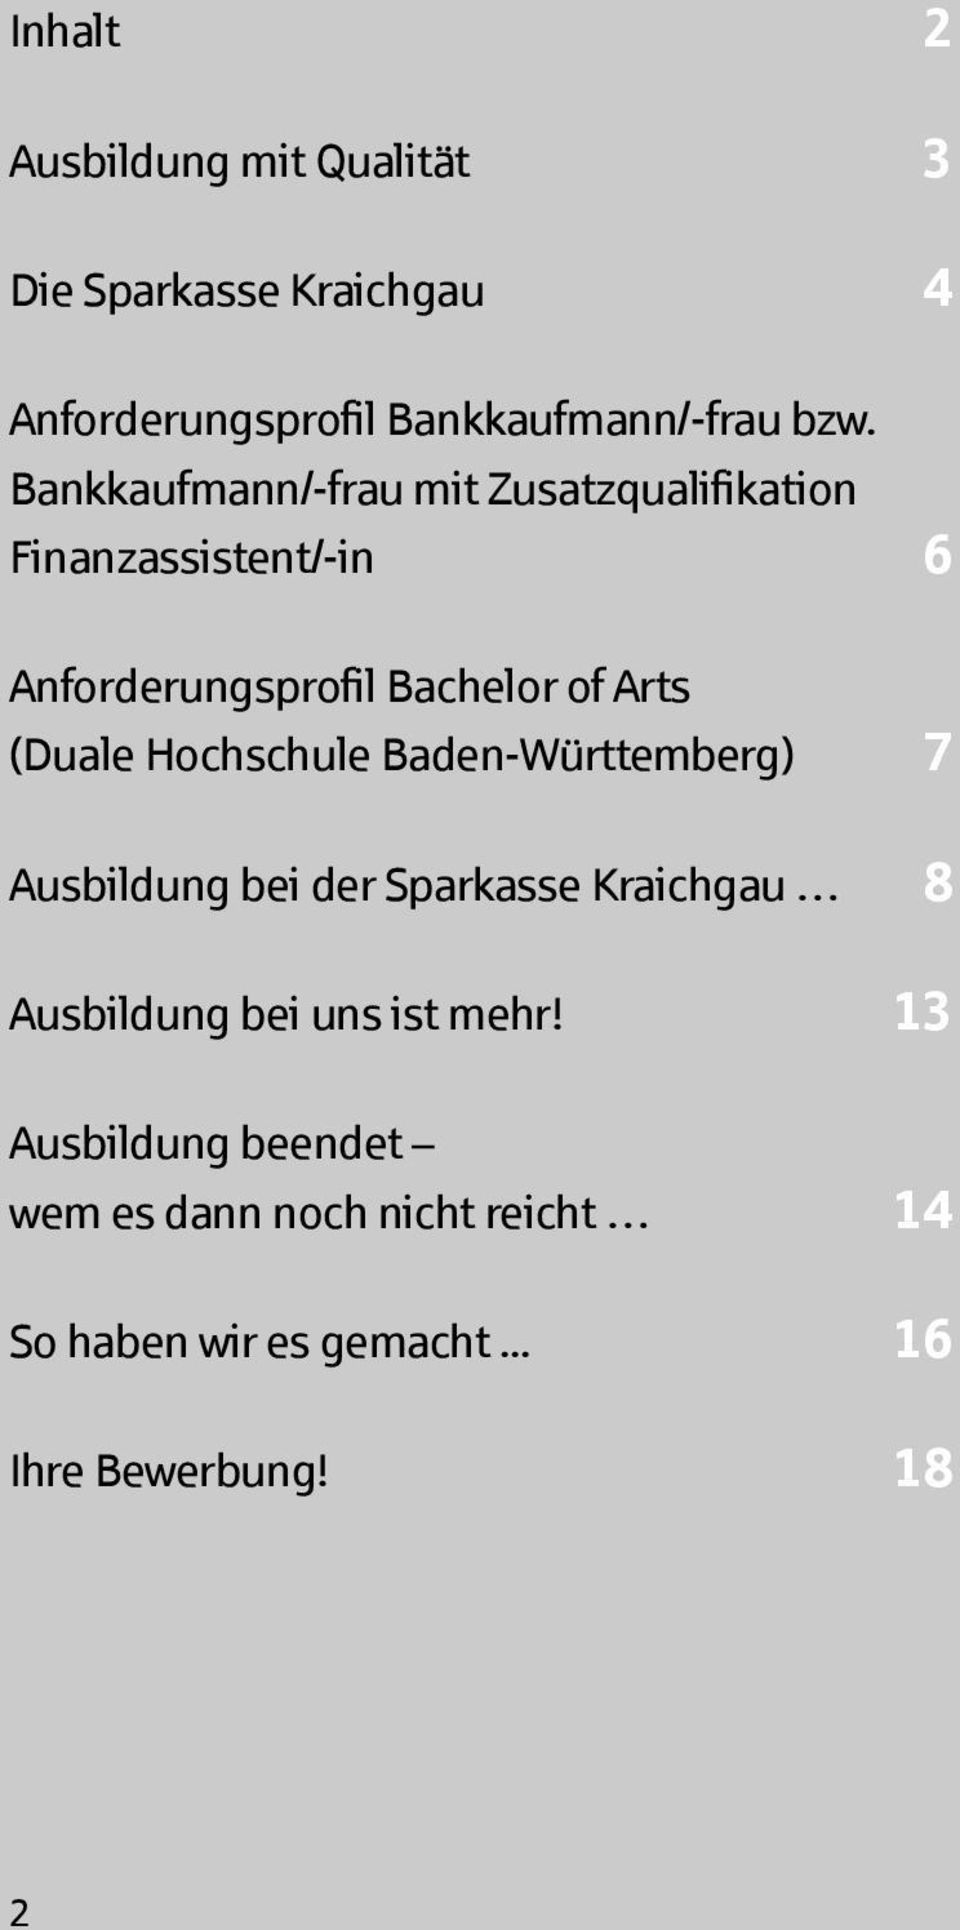 (Duale Hochschule Baden-Württemberg) 7 Ausbildung bei der Sparkasse Kraichgau 8 Ausbildung bei uns ist